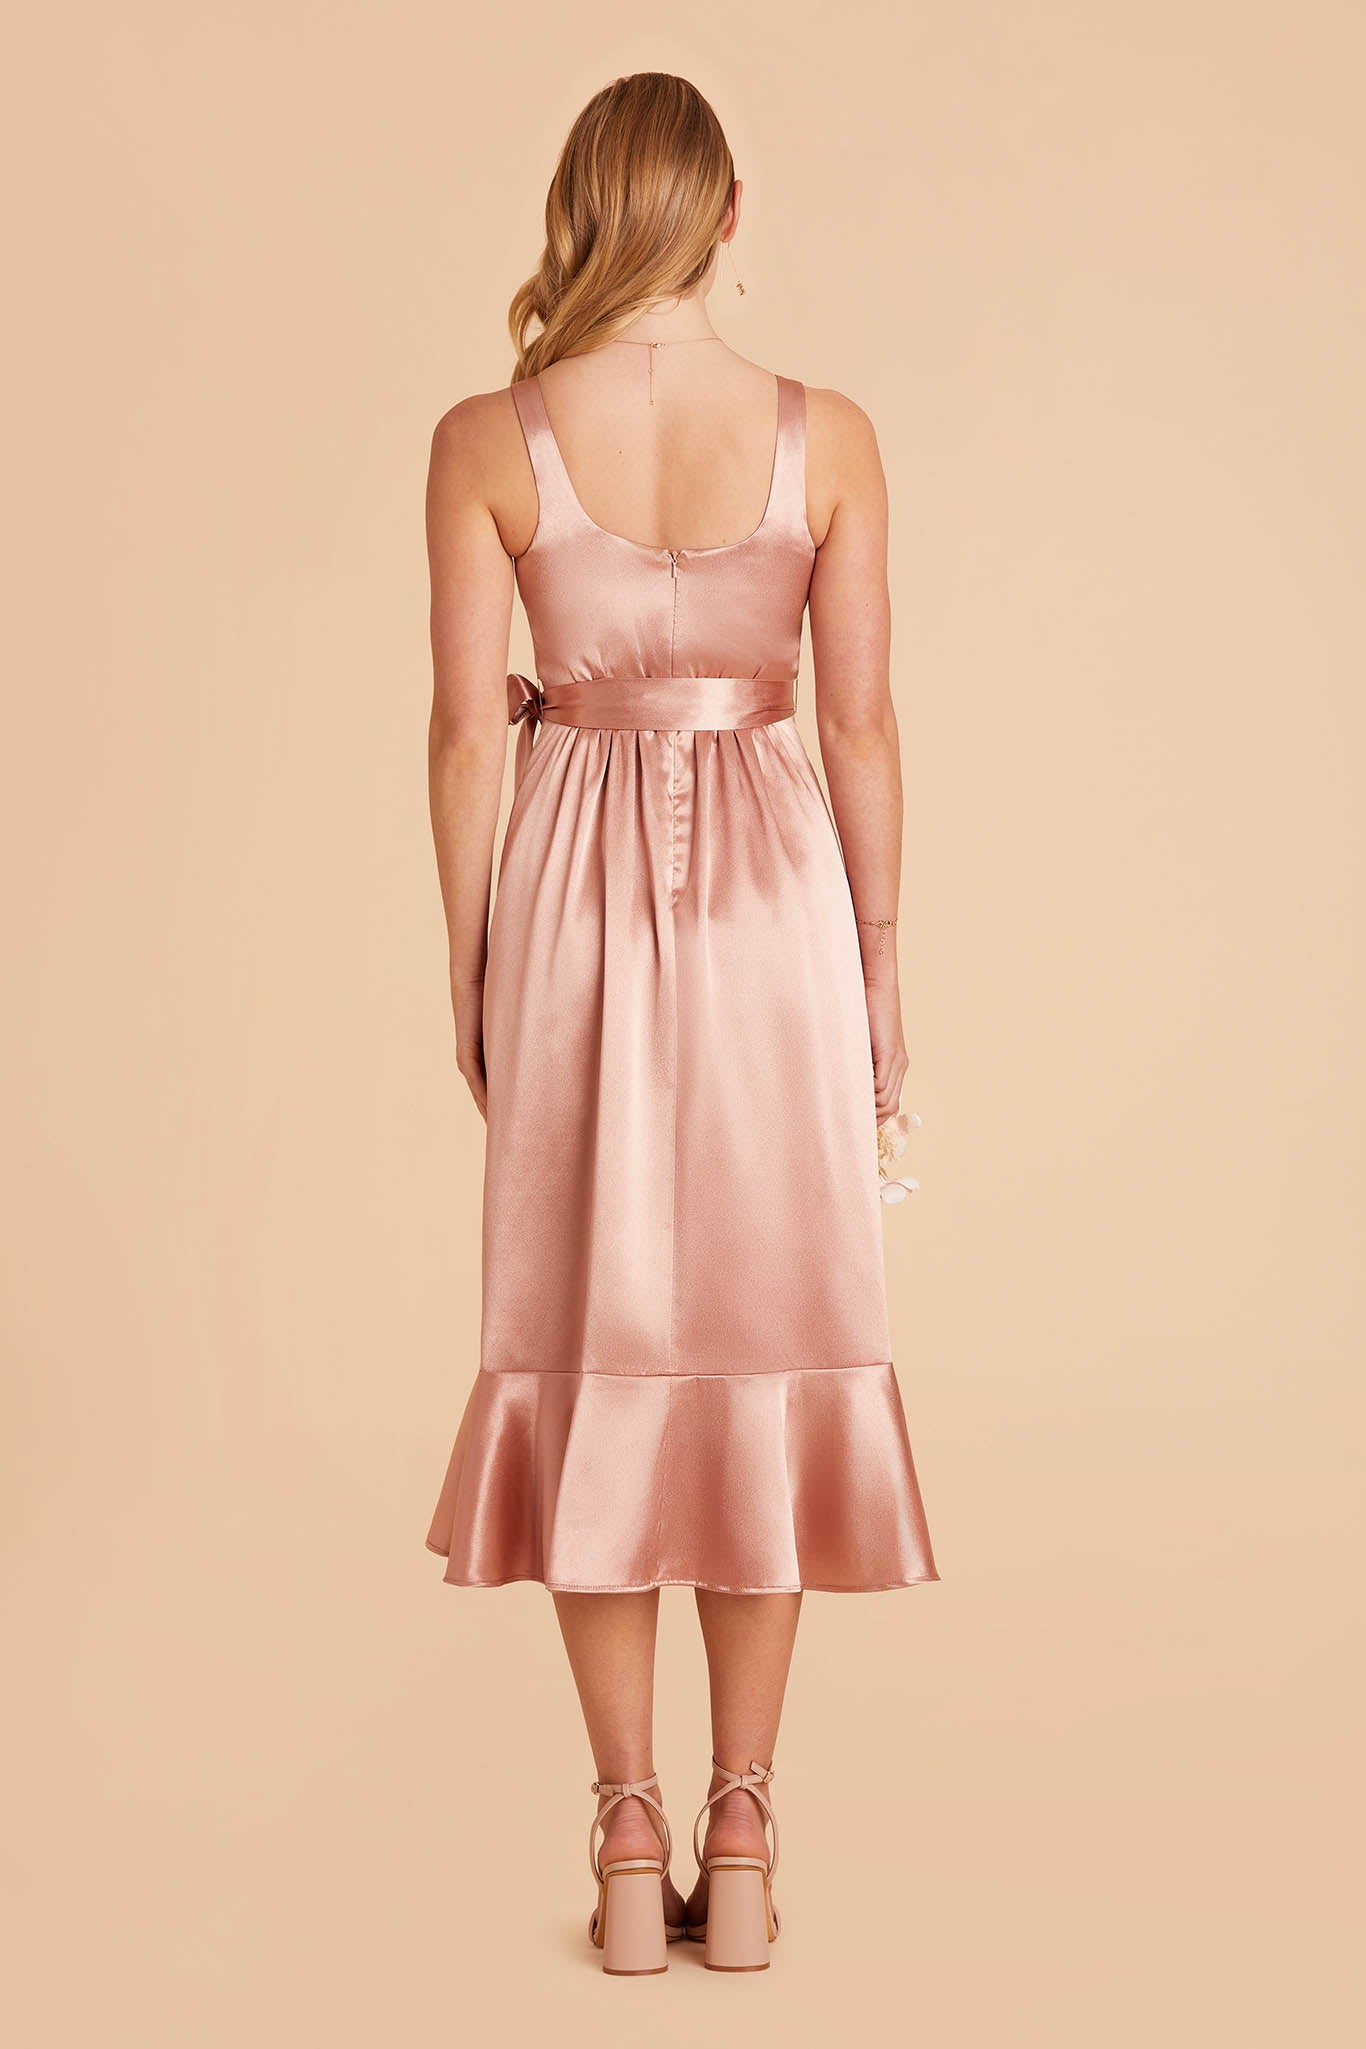 rose gold pink satin convertible pinafore-style midi bridesmaid dress with ruffles